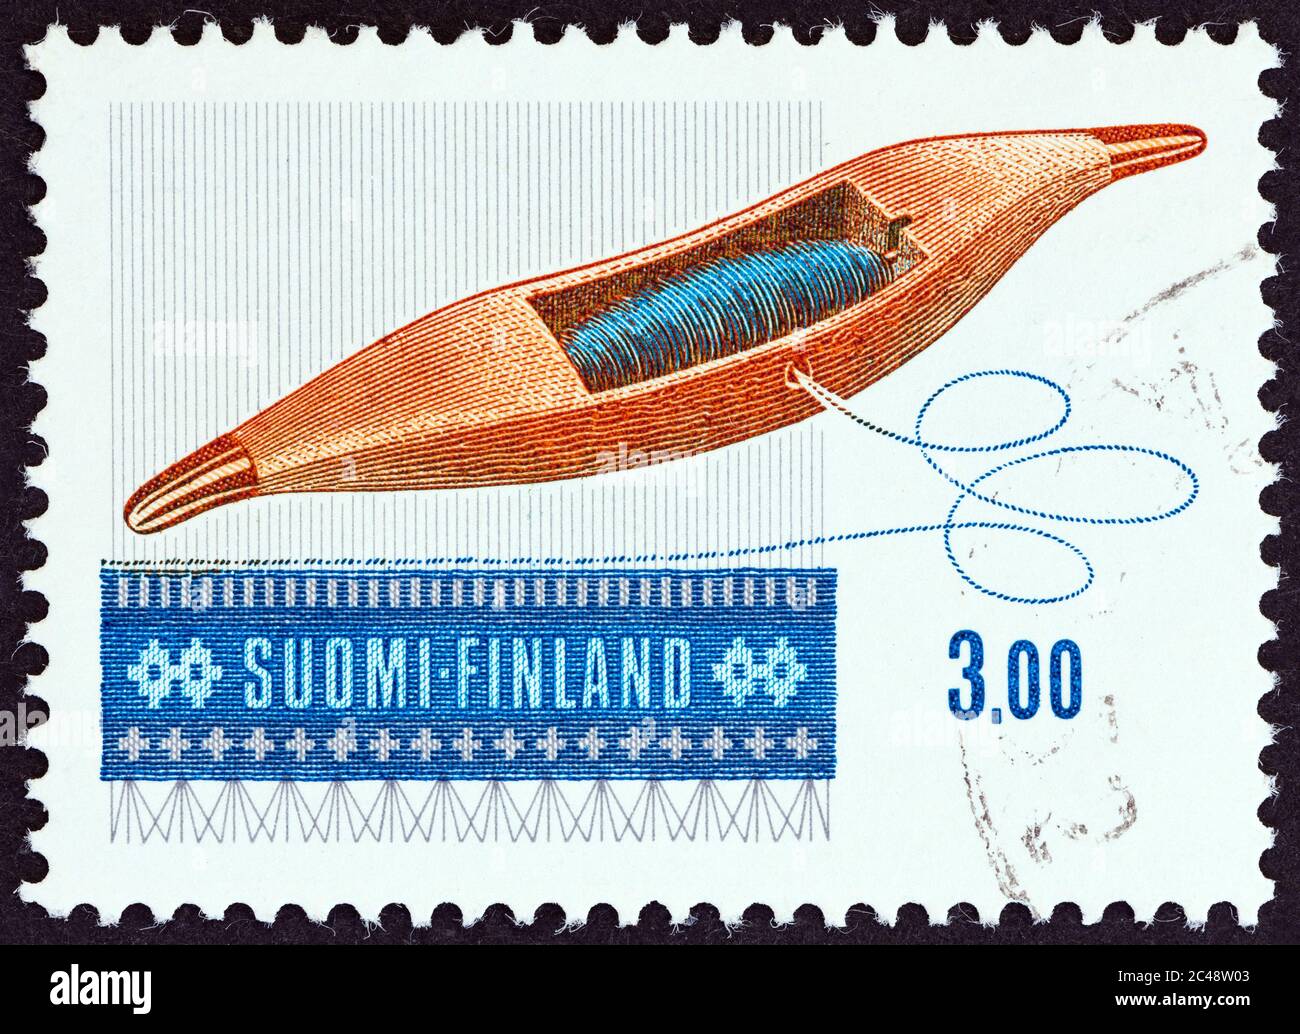 FINNLAND - UM 1979: Eine in Finnland gedruckte Marke aus der Ausgabe "Art of Weaving" zeigt den Weaving Shuttle Drive, um 1979. Stockfoto